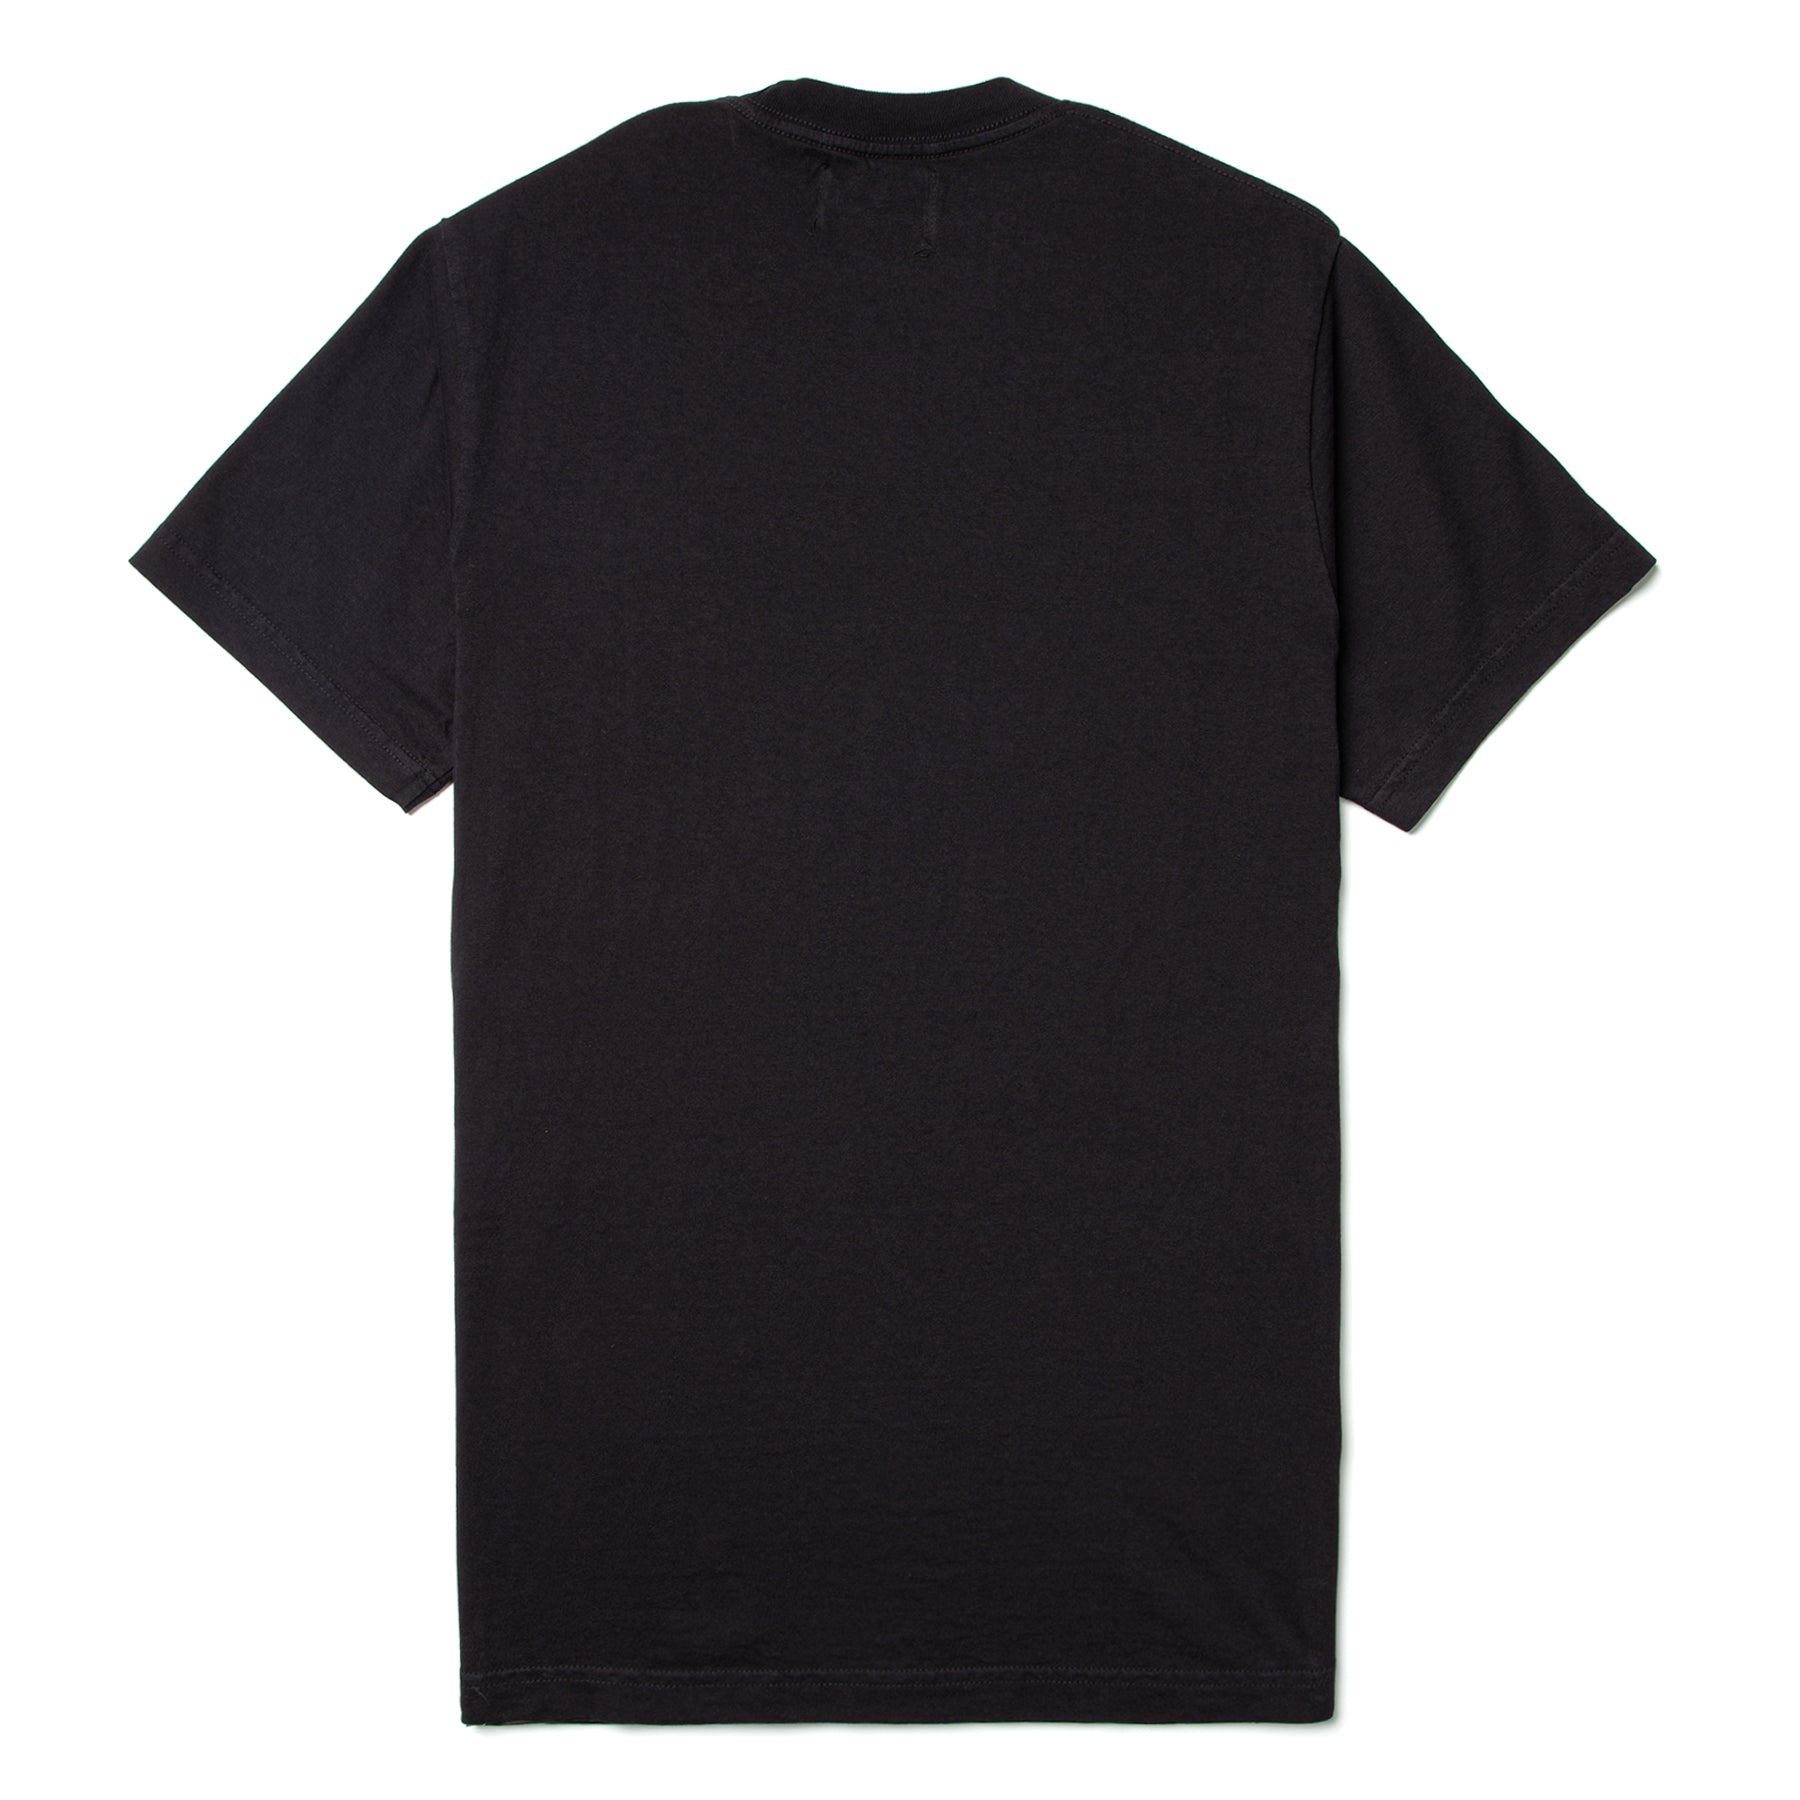 Hãy chiêm ngưỡng chiếc áo thun AWAKE College Logo màu đen đầy phong cách và sự trẻ trung. Được thiết kế đơn giản nhưng vô cùng ấn tượng, chiếc áo này sẽ là phụ kiện hoàn hảo cho các buổi đi chơi hay dạo phố cùng bạn bè.